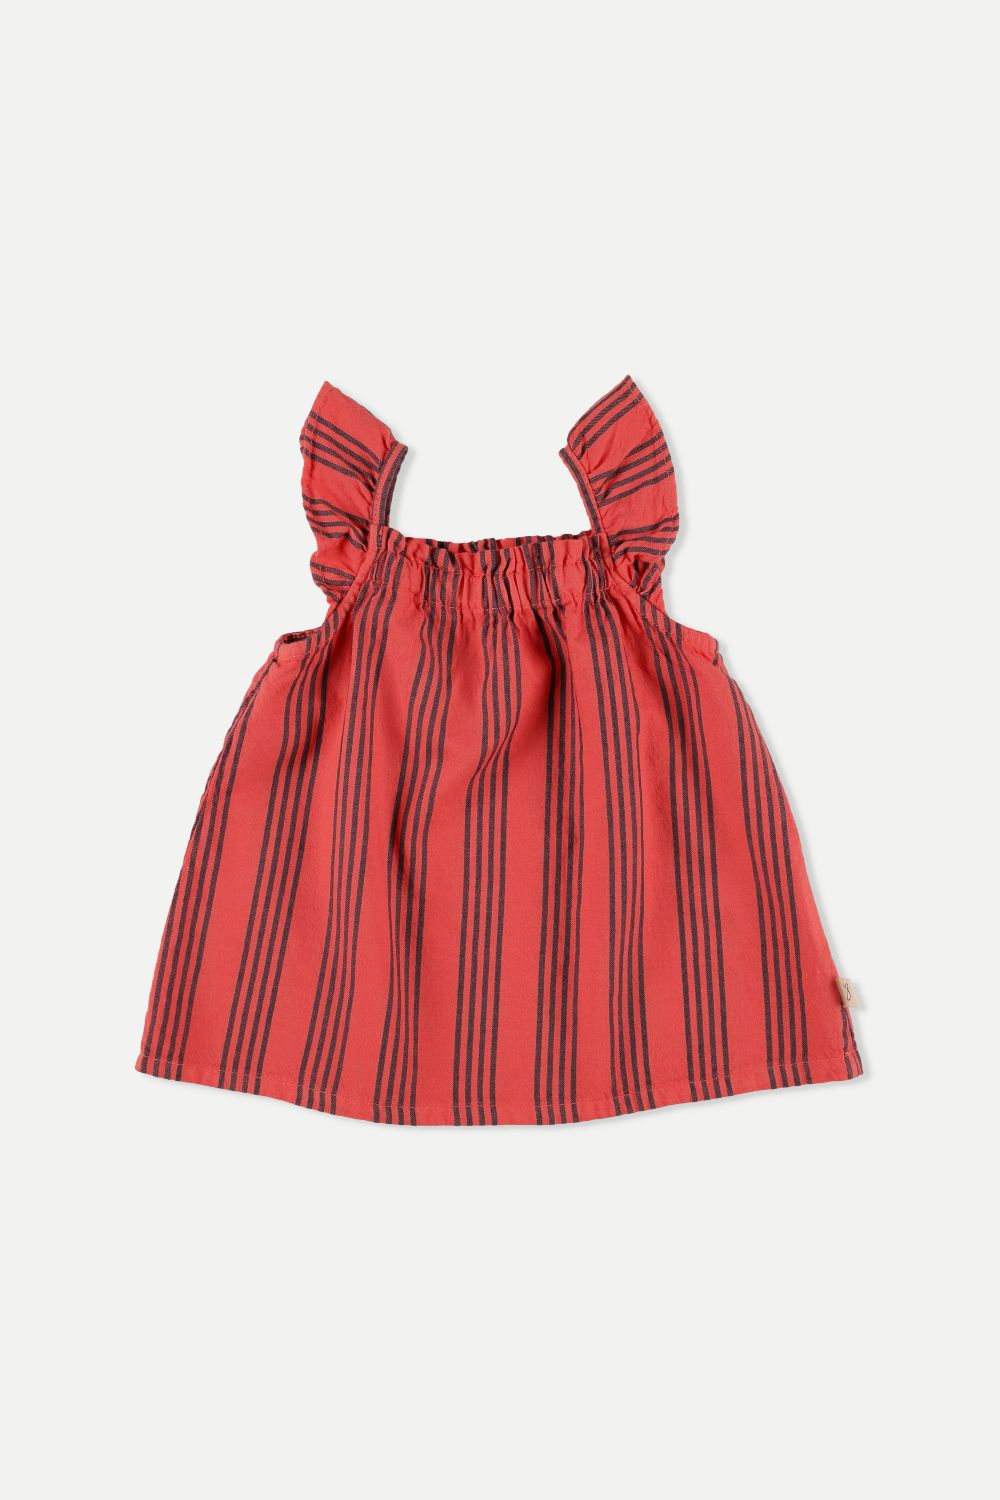 Little cozmo baby vintage dress (SZ 12-24m)